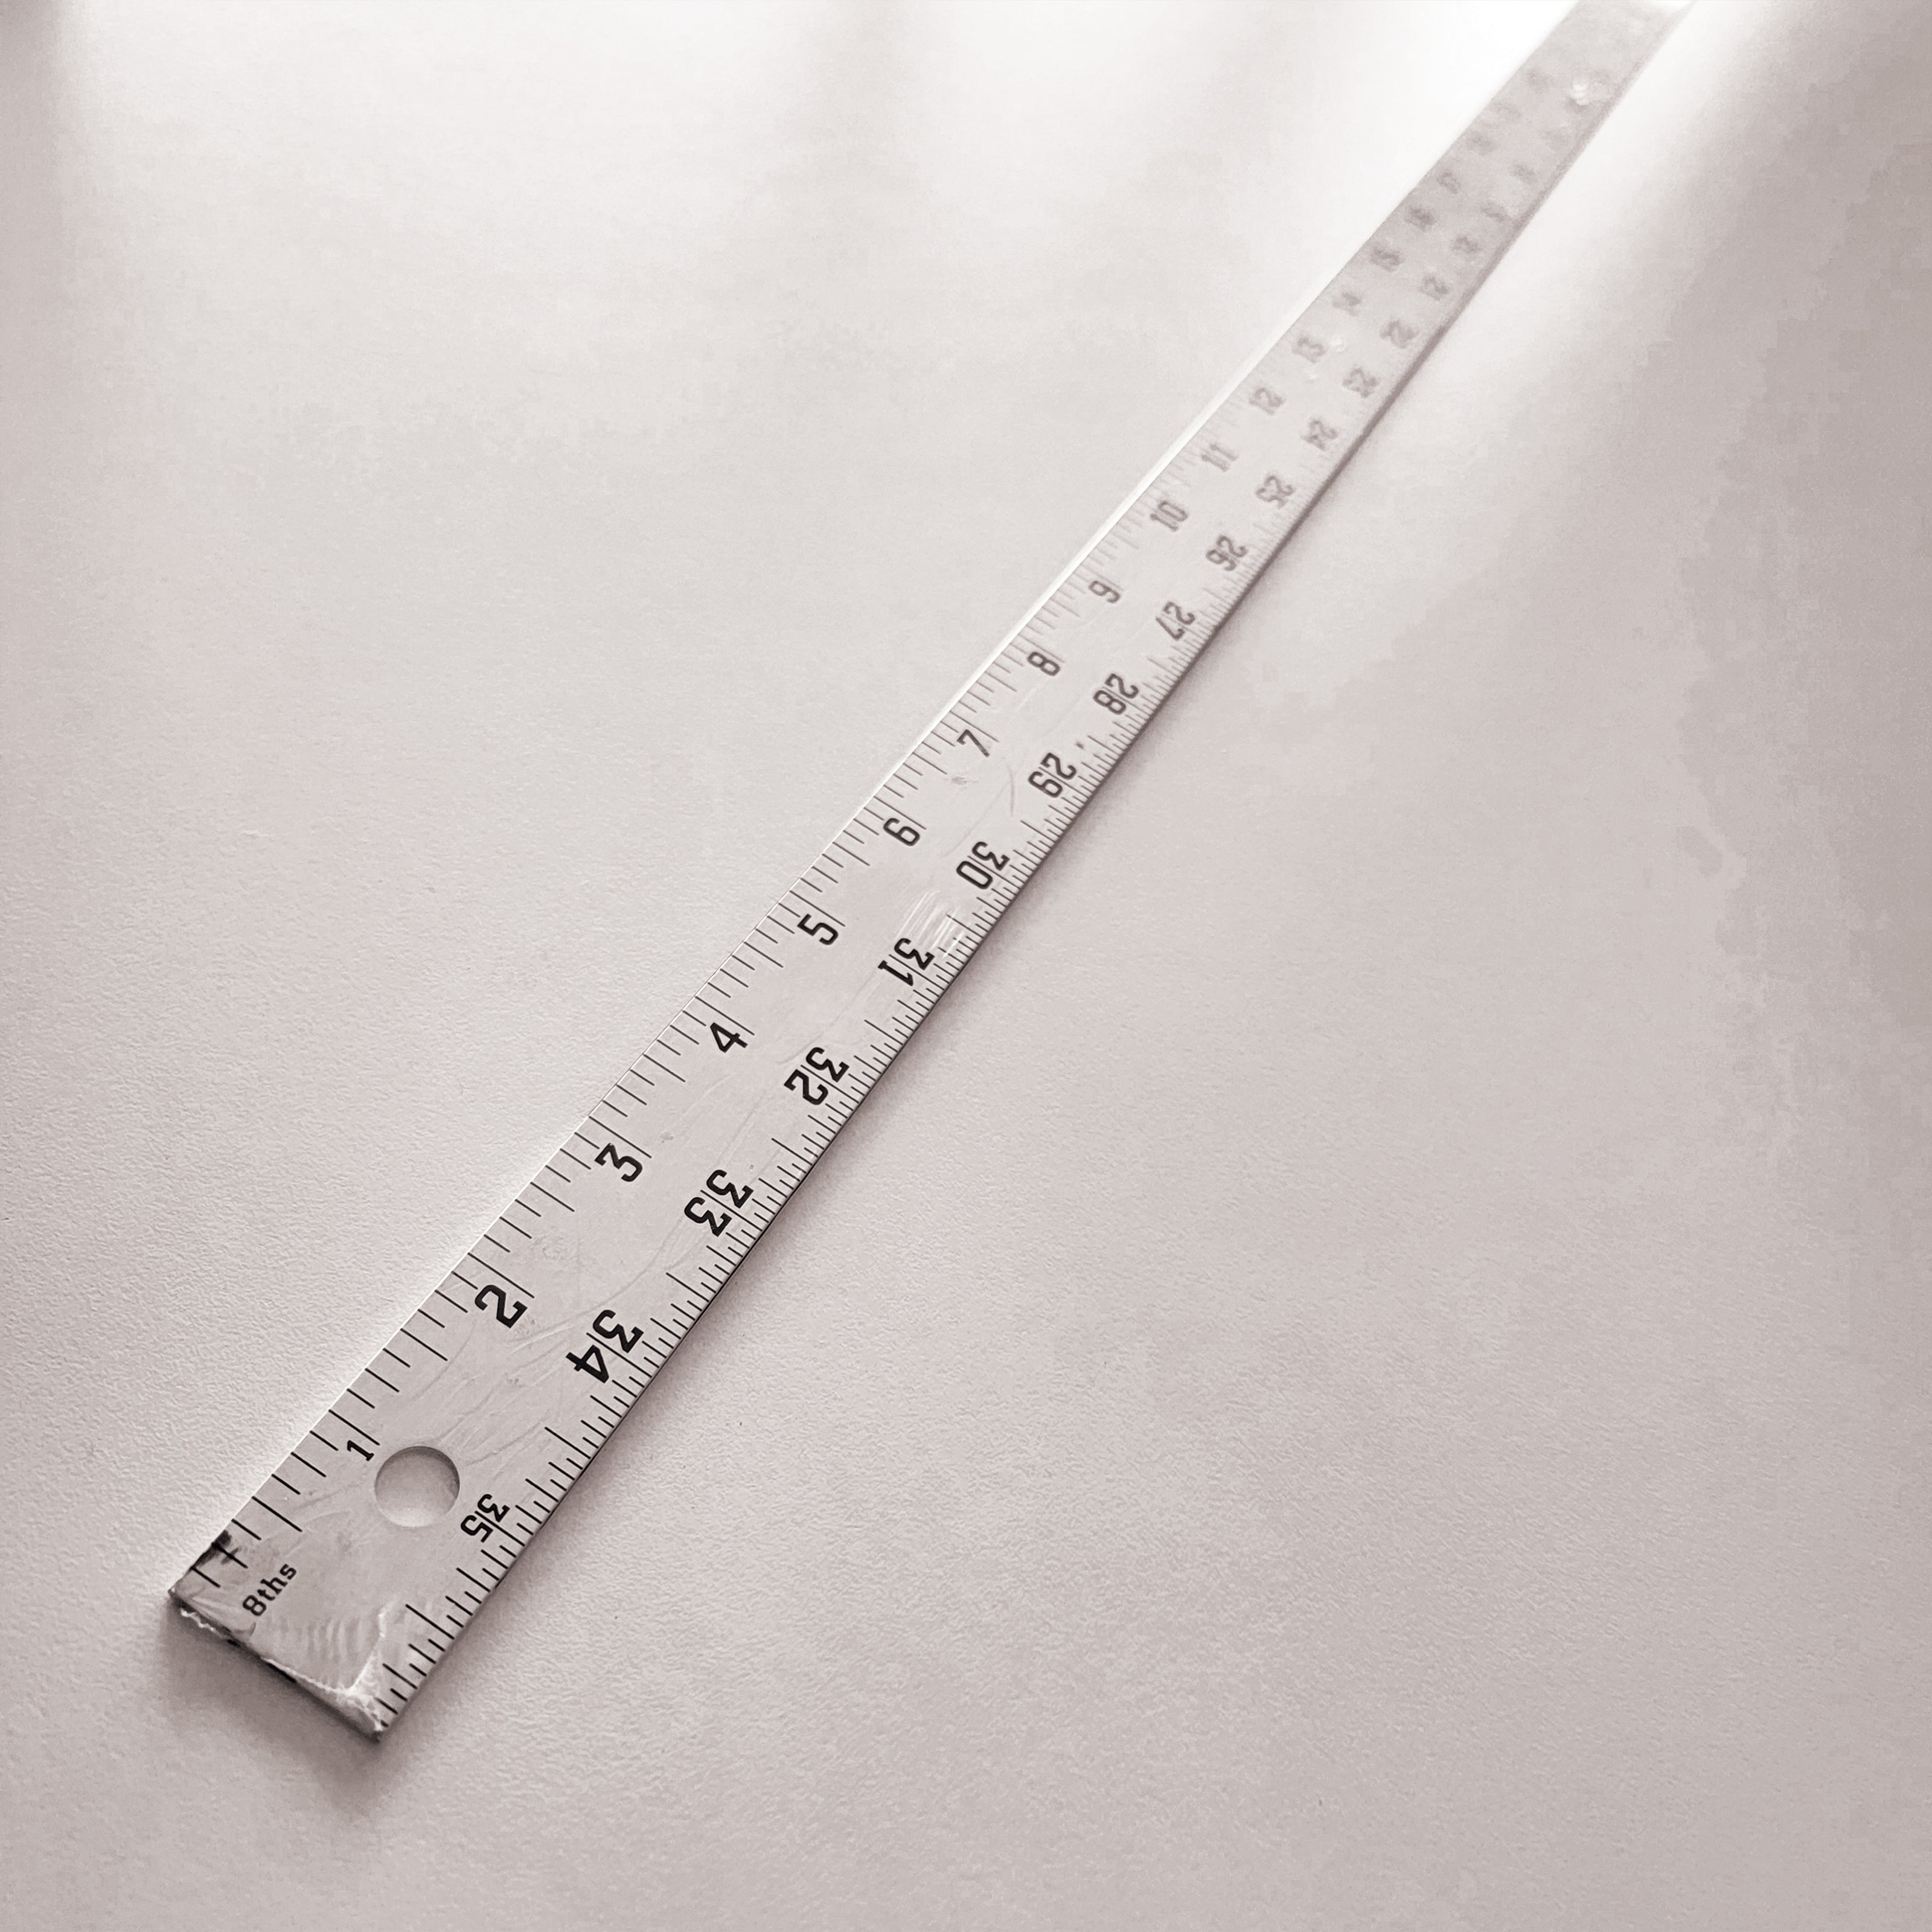 a long ruler